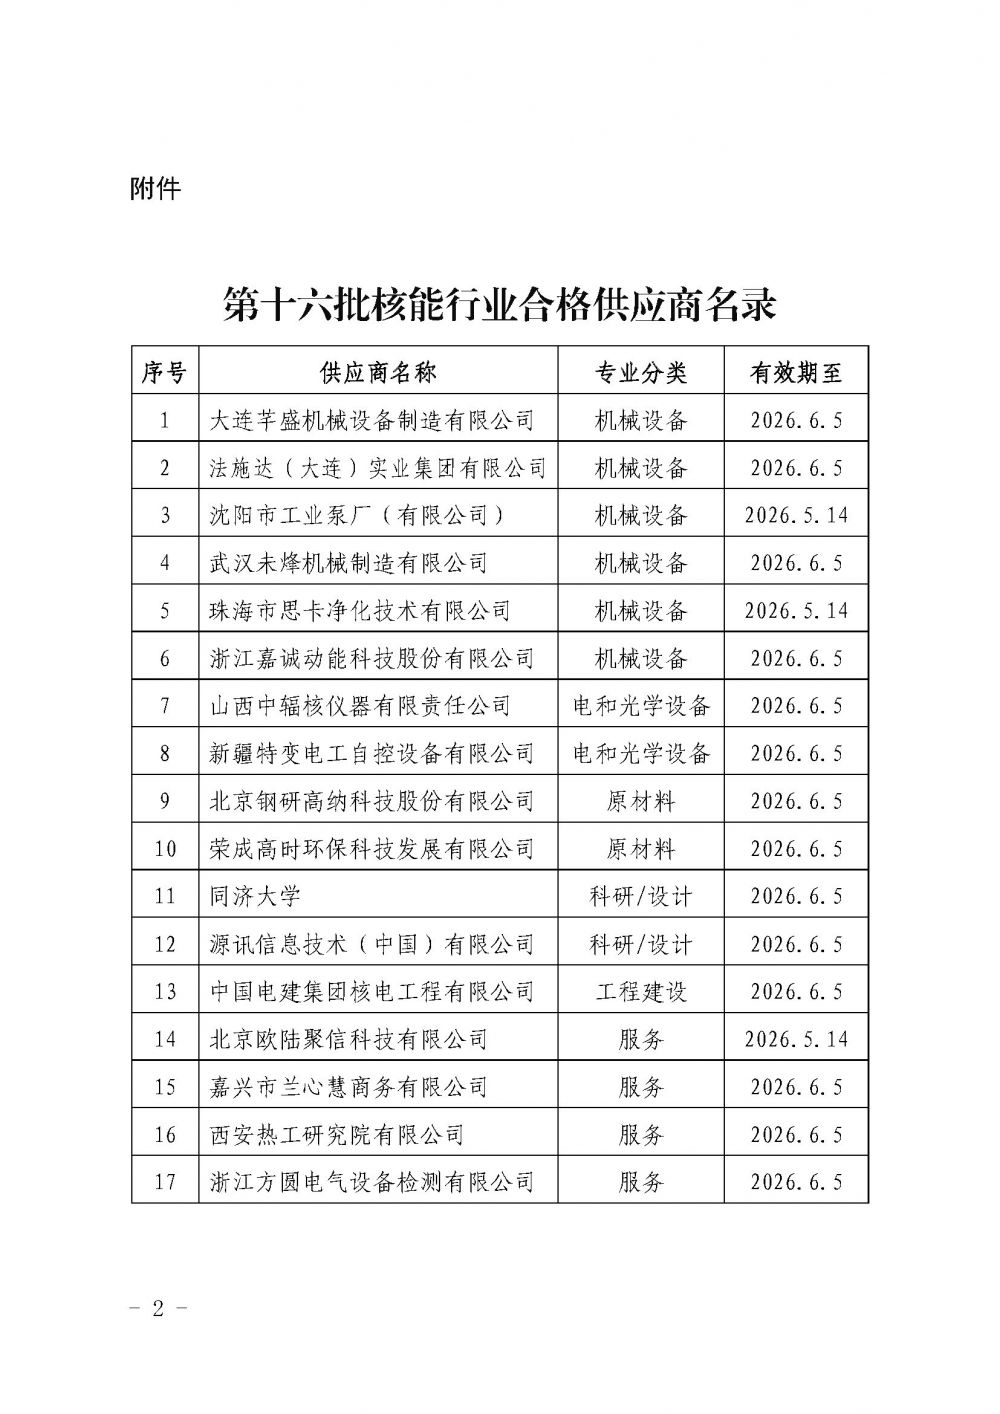 关于发布中国核能行业协会核能行业第十六批合格供应商名录的公告_页面_2.jpg